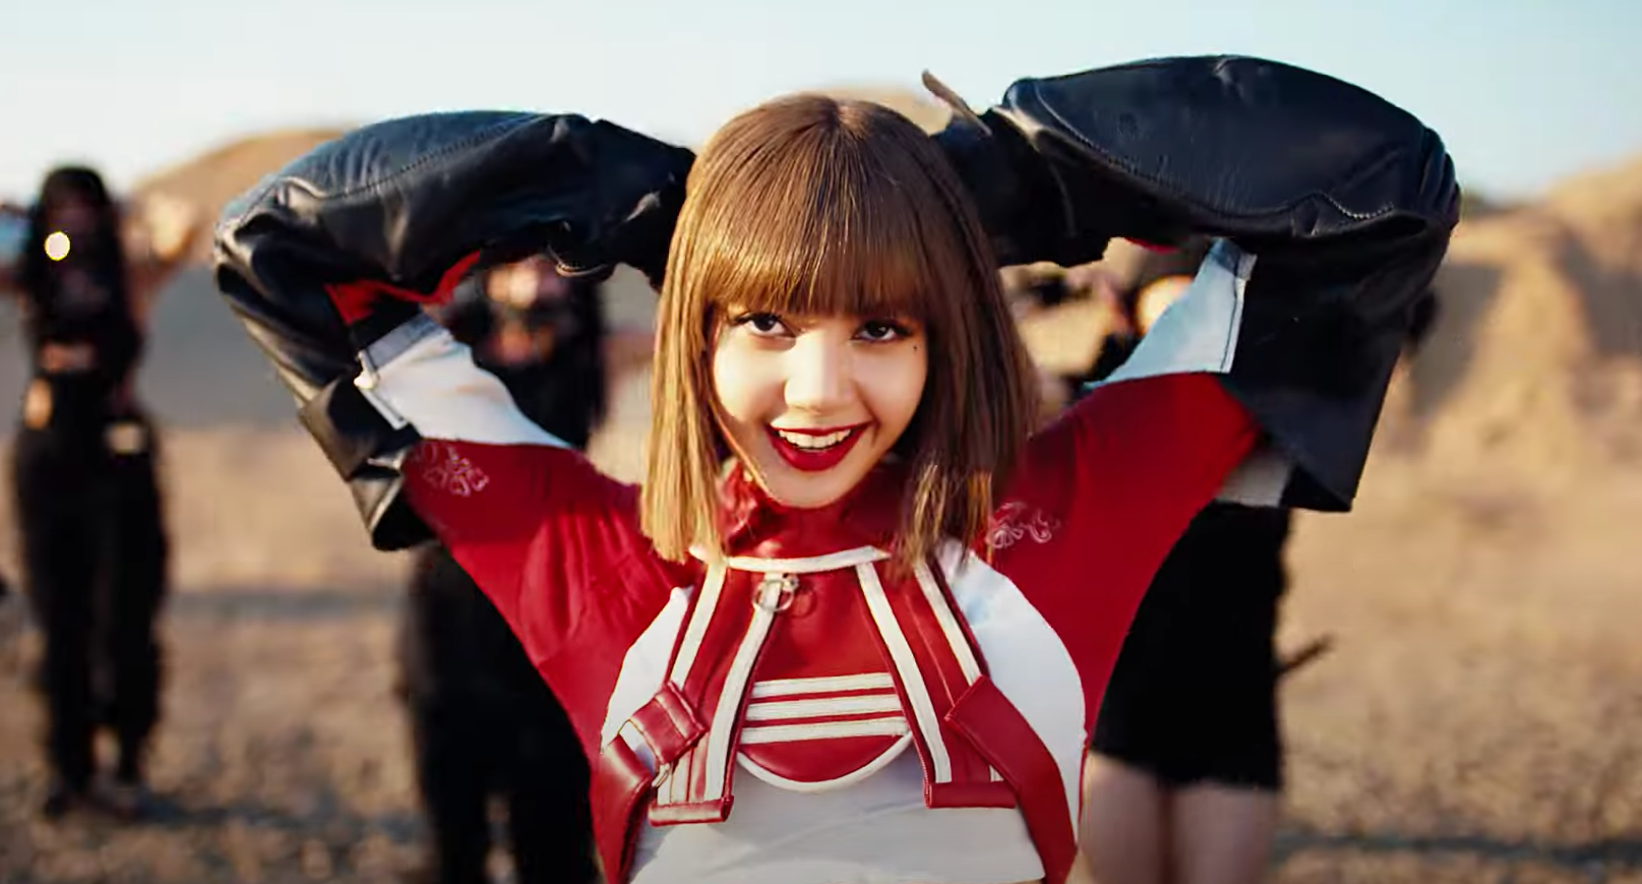 MV debut của Lisa:  Đổ xô kỷ lục Taylor Swift, nắm giữ top 1 MV có lượt xem cao nhất 24h